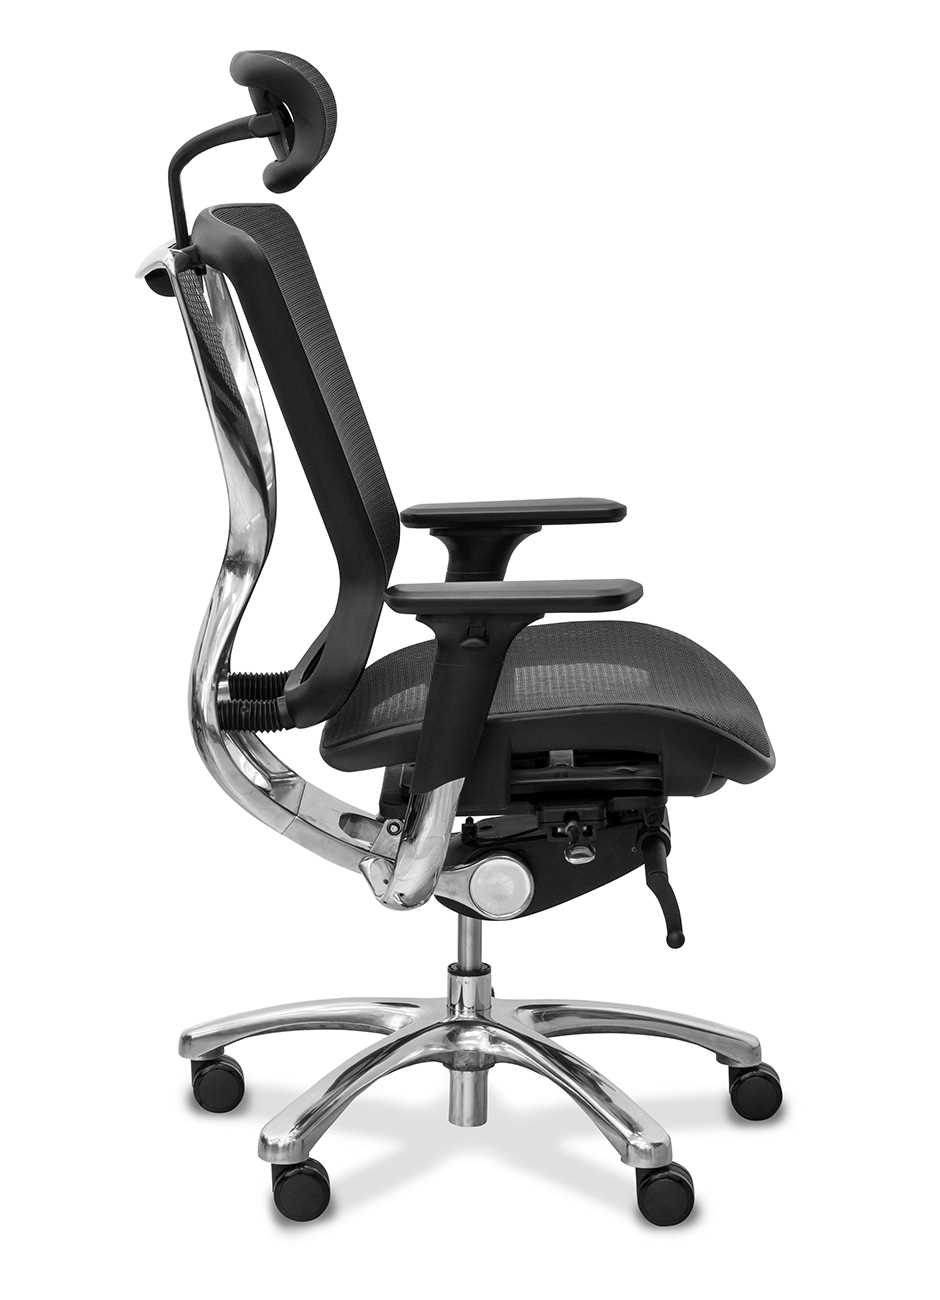 Компьютерный стул: поддержка спины и комфорт при работе